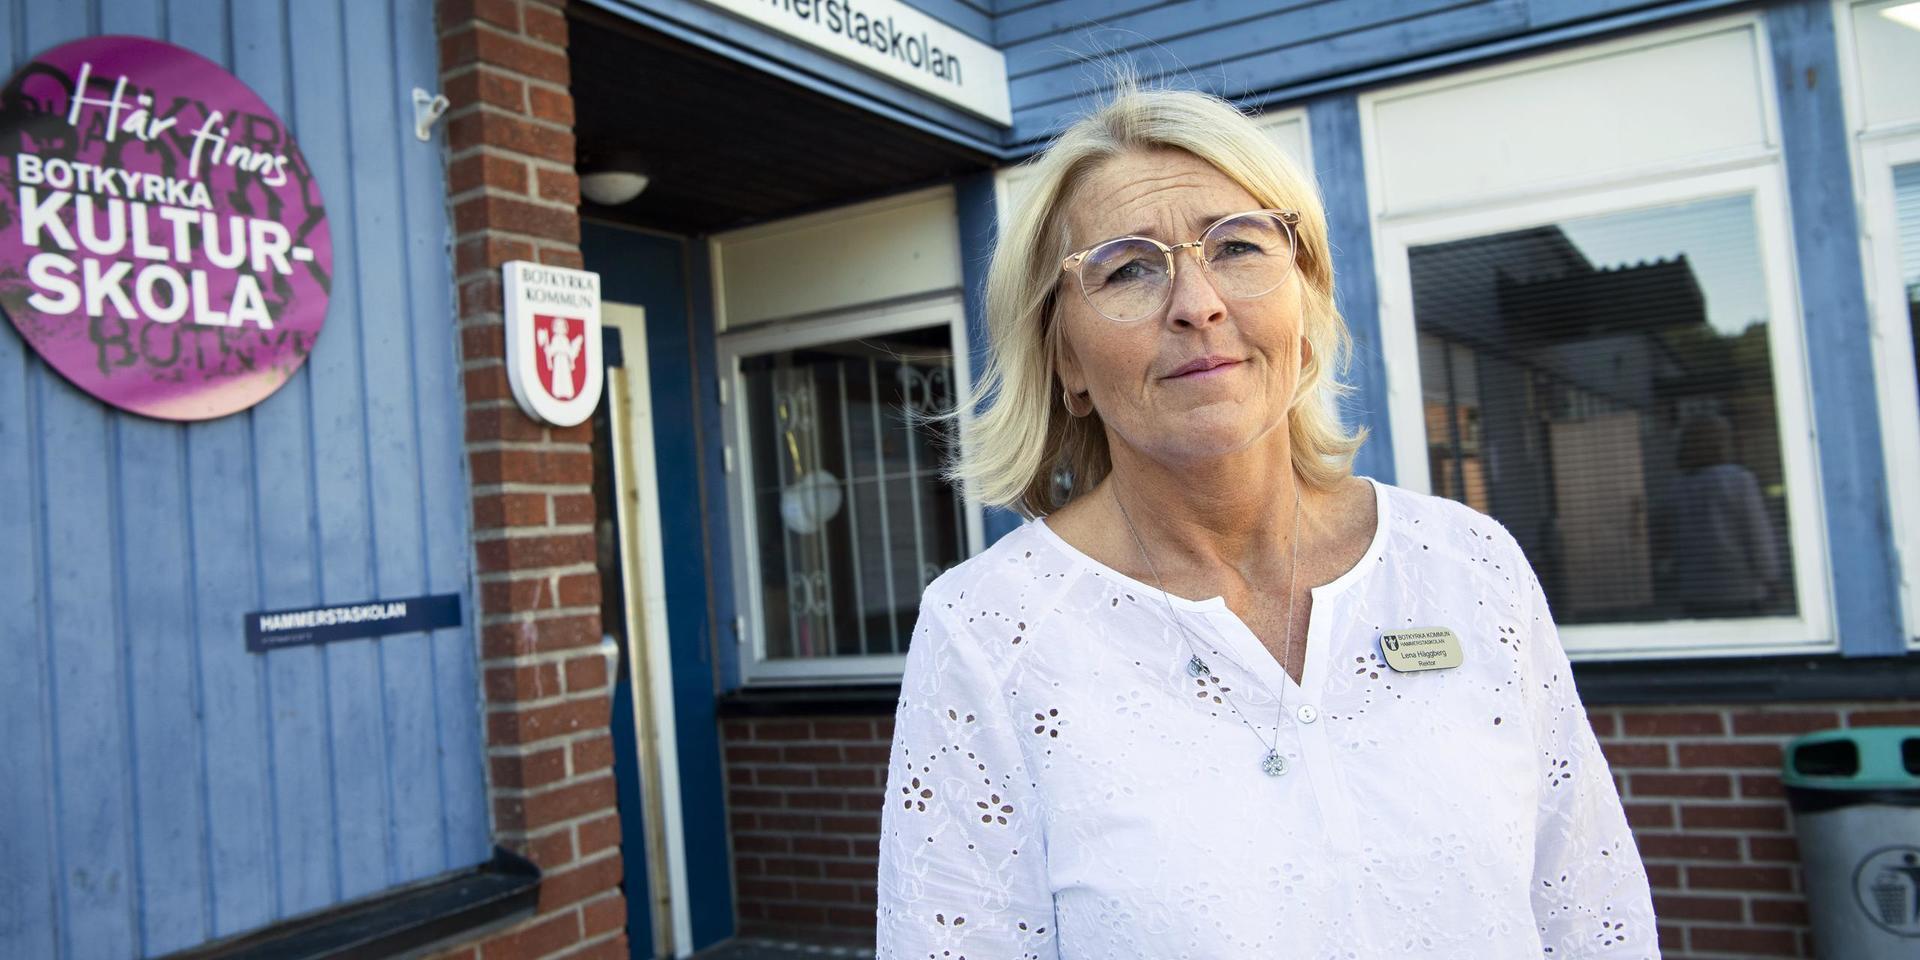 Lena Häggberg, rektor på Hammerstaskolan i Norsborg, är orolig för att sparkrav försämrar möjligheten att fånga upp unga på glid.